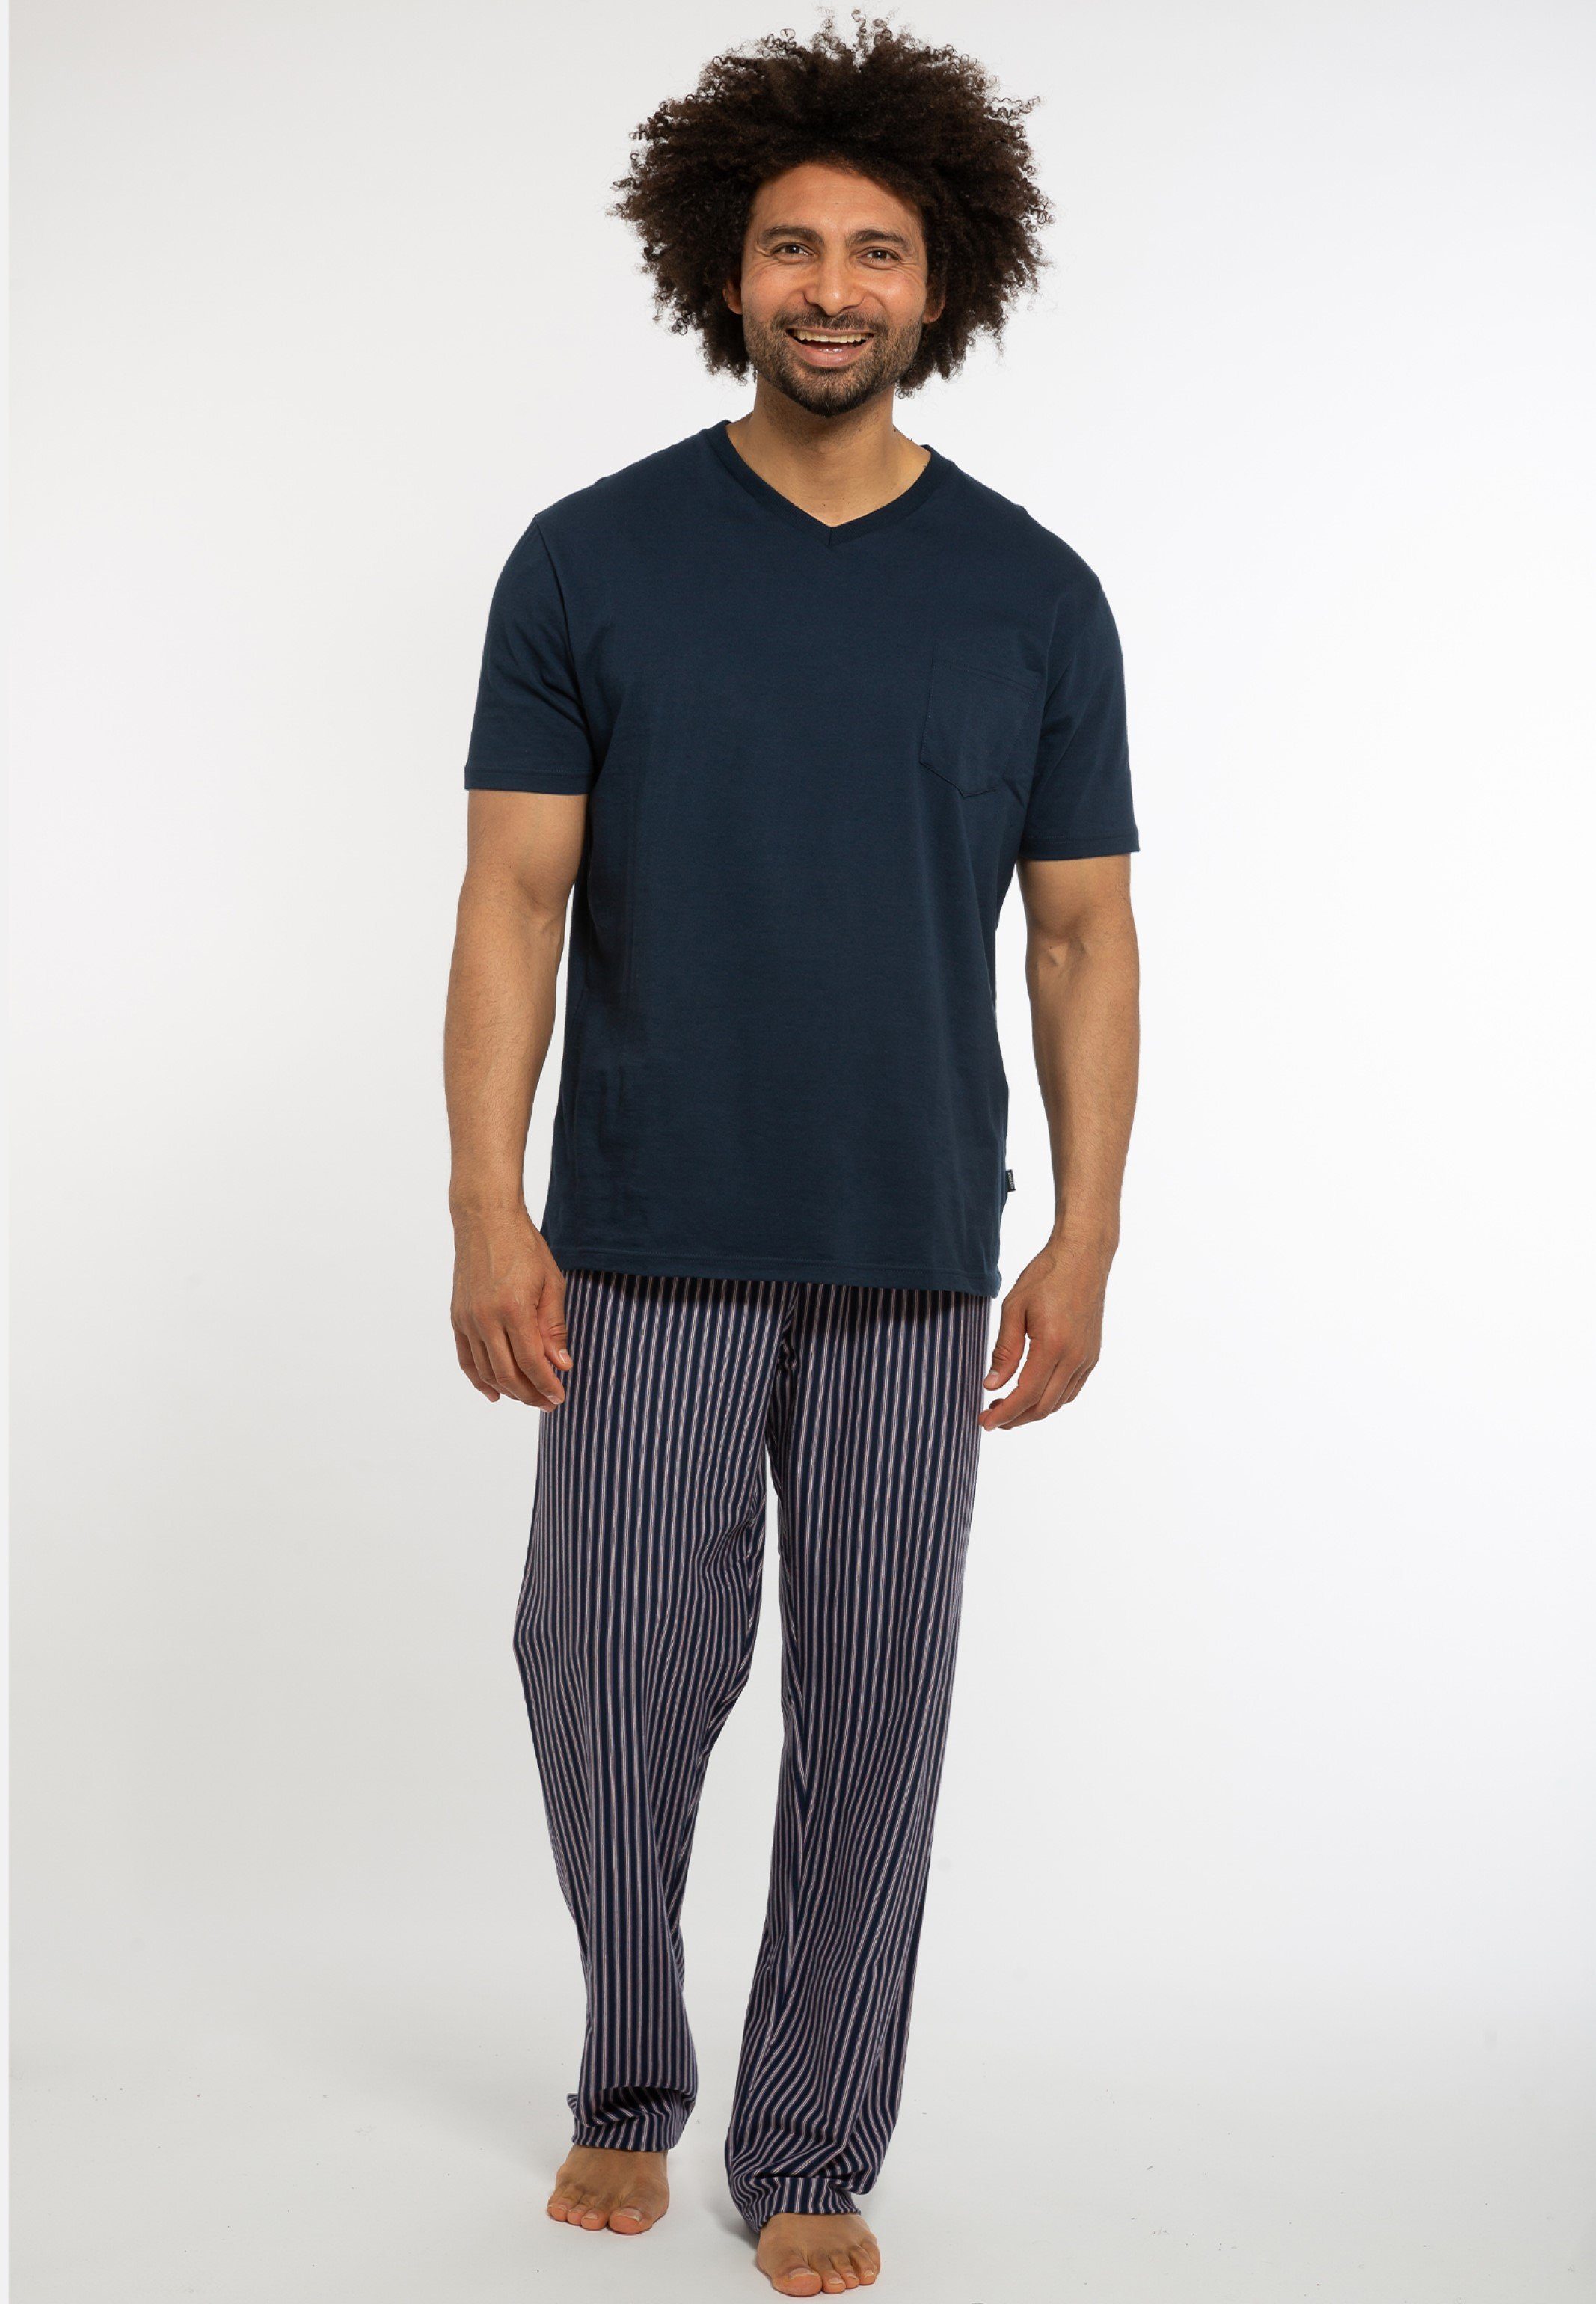 zum selber (1-tlg) - Schlafanzug mixen Match Schlafanzug Ammann & Pyjamaoberteil Cotton Oberteil Baumwolle Mix Organic - -